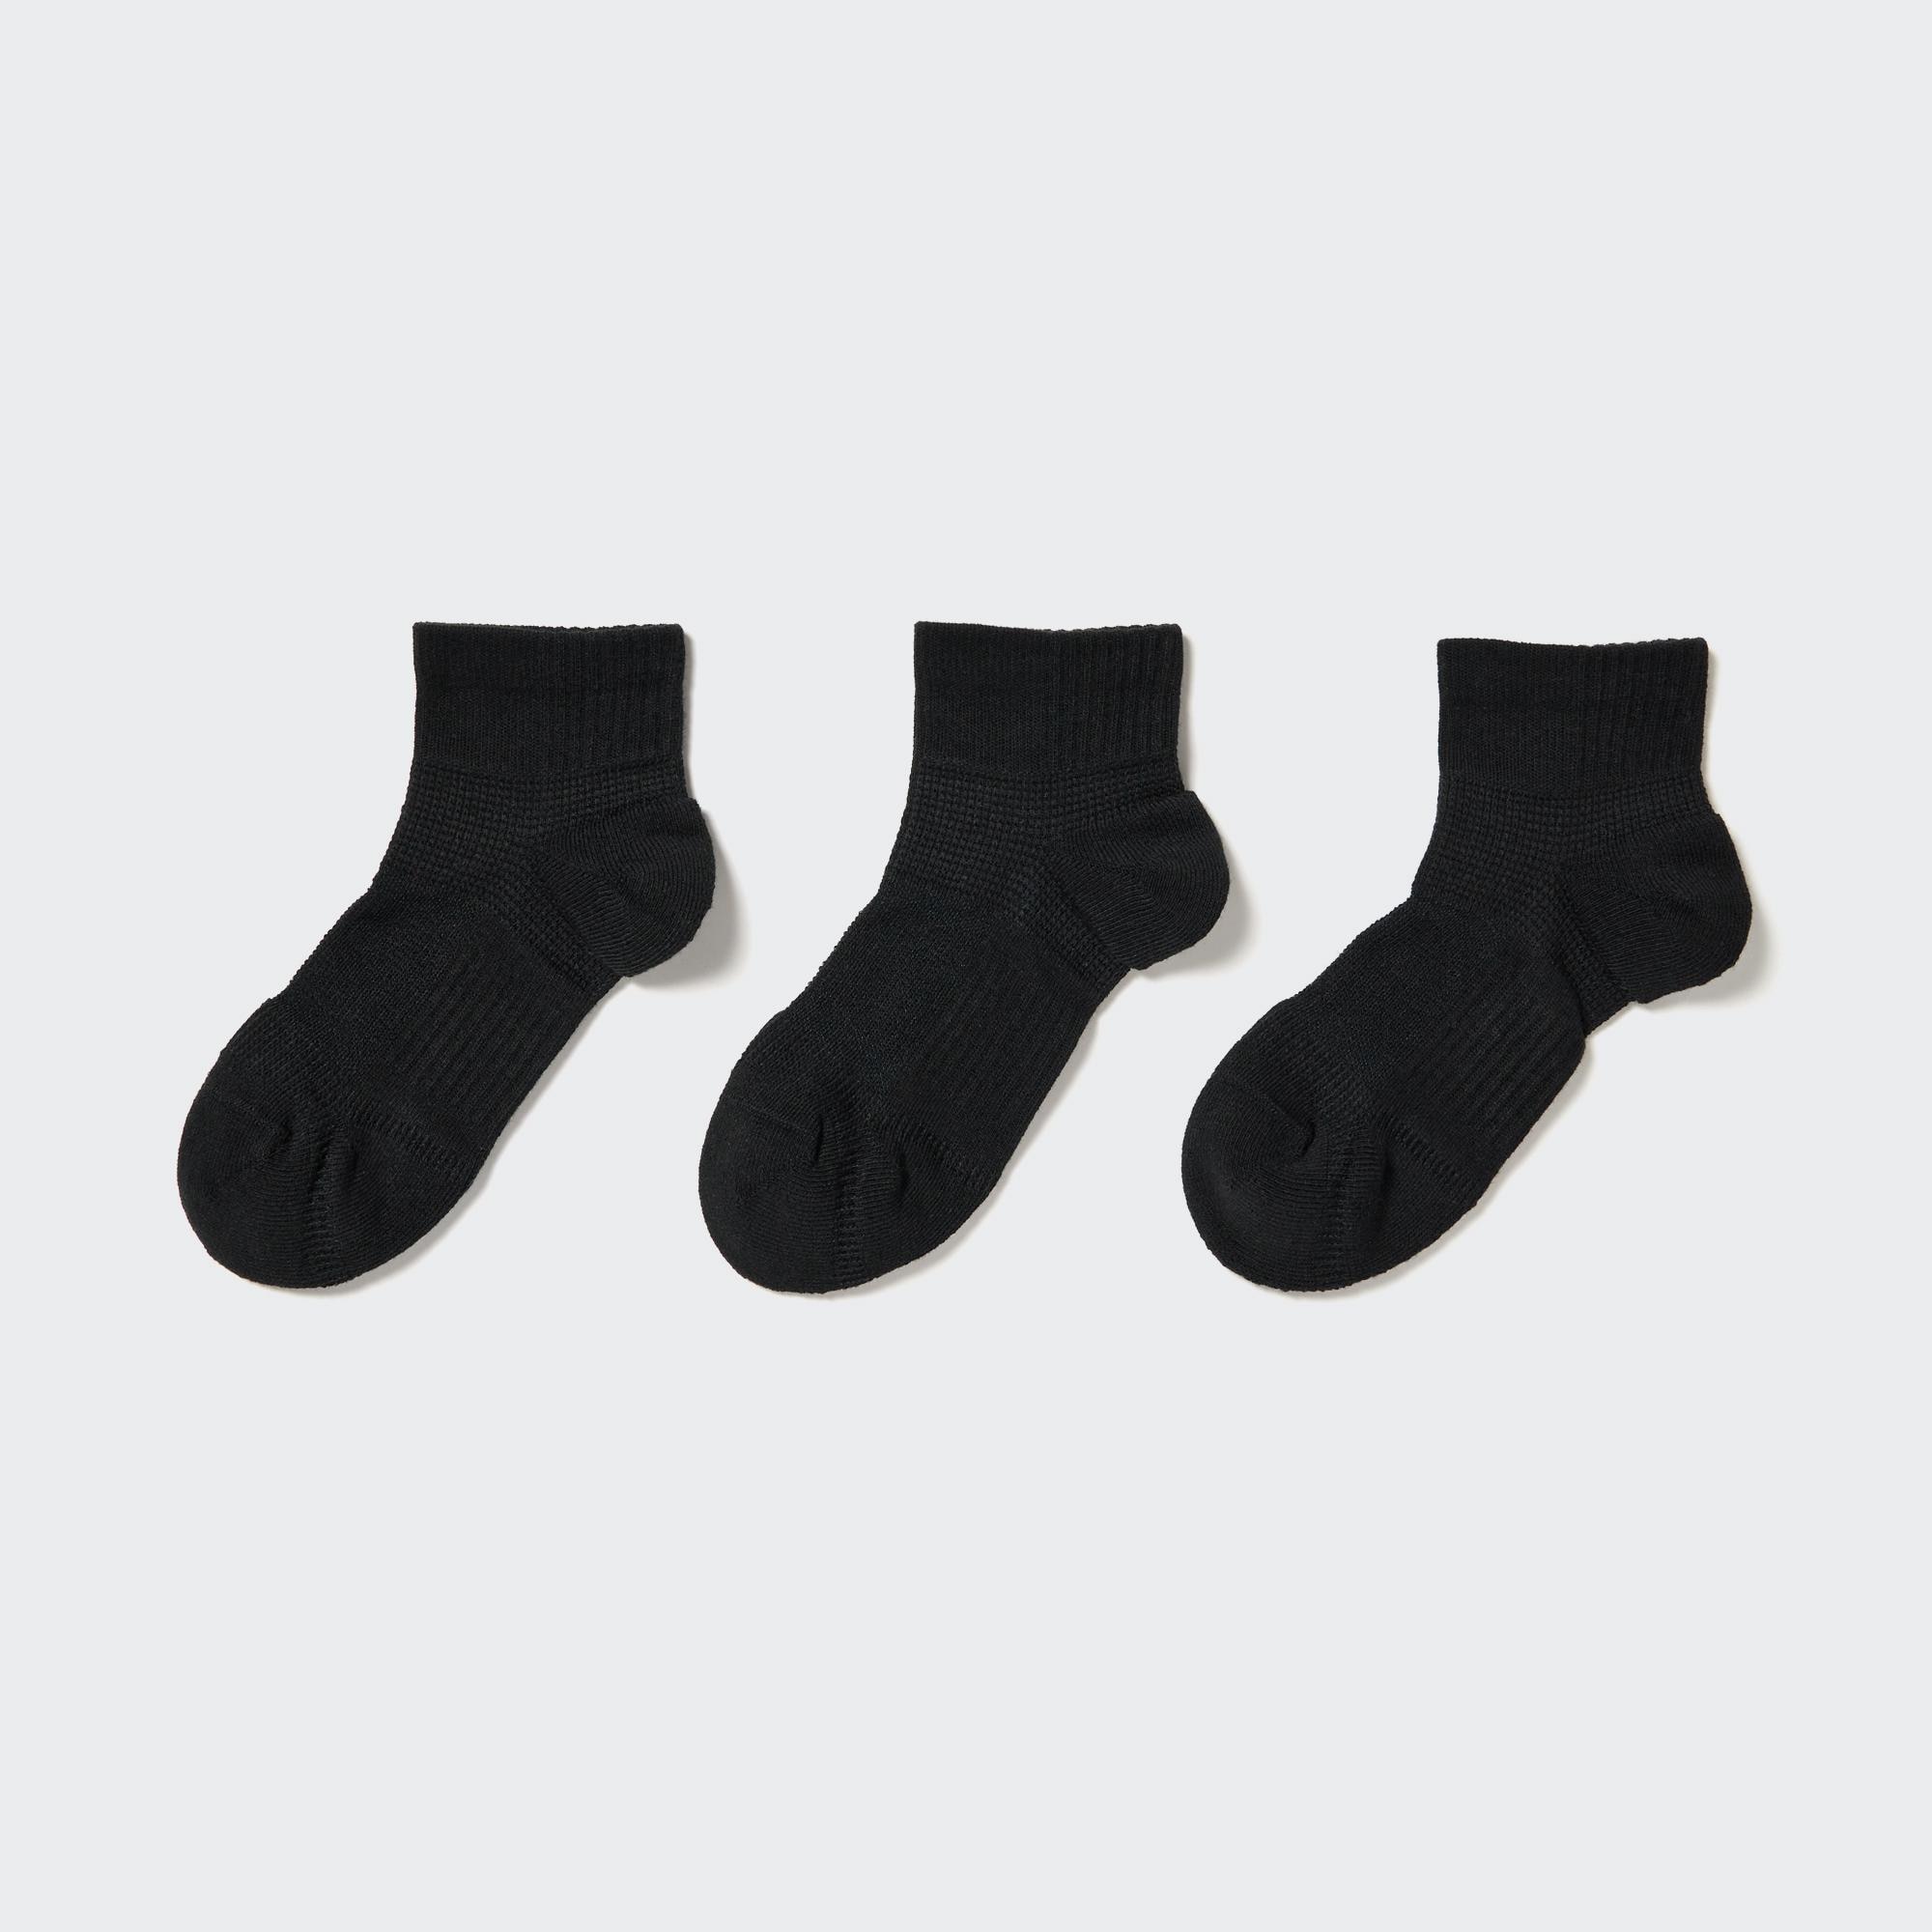 Носки короткие (3 пары, спортивные, ворсовые) UNIQLO, черный короткие носки 3 пары спортивные uniqlo черный